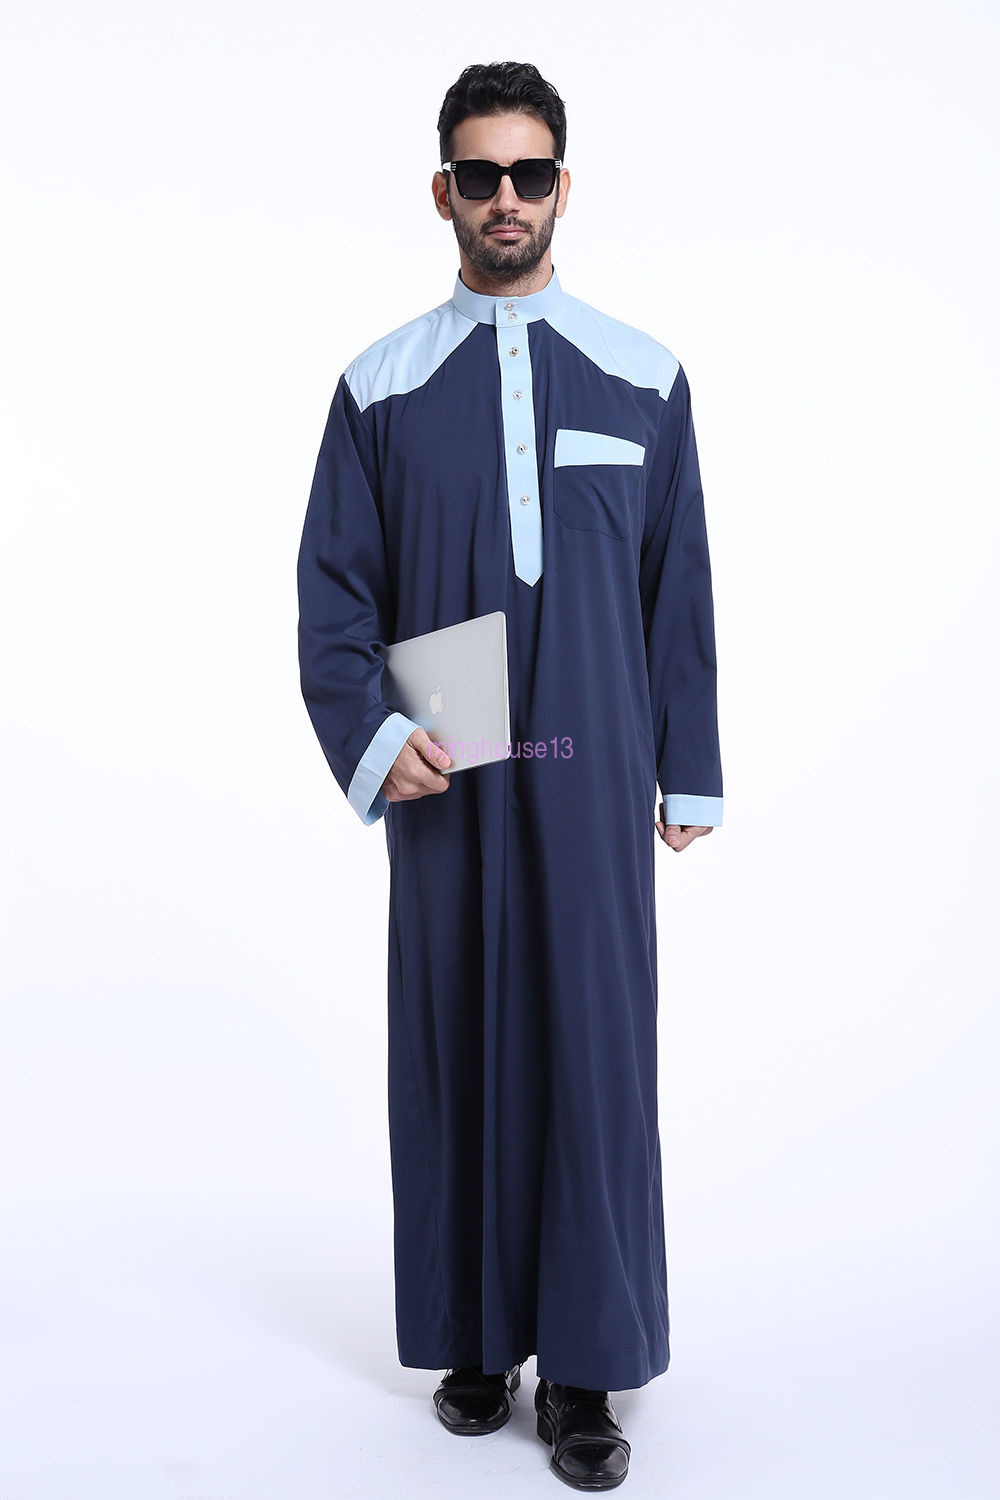 Uomo Musulmano Thobe con maniche corte e girocollo Dishdasha Caftano islamico Puro Colore Accappatoio Arabico Saudita Thobe Medio Oriente Dubai Abbigliamento etnico